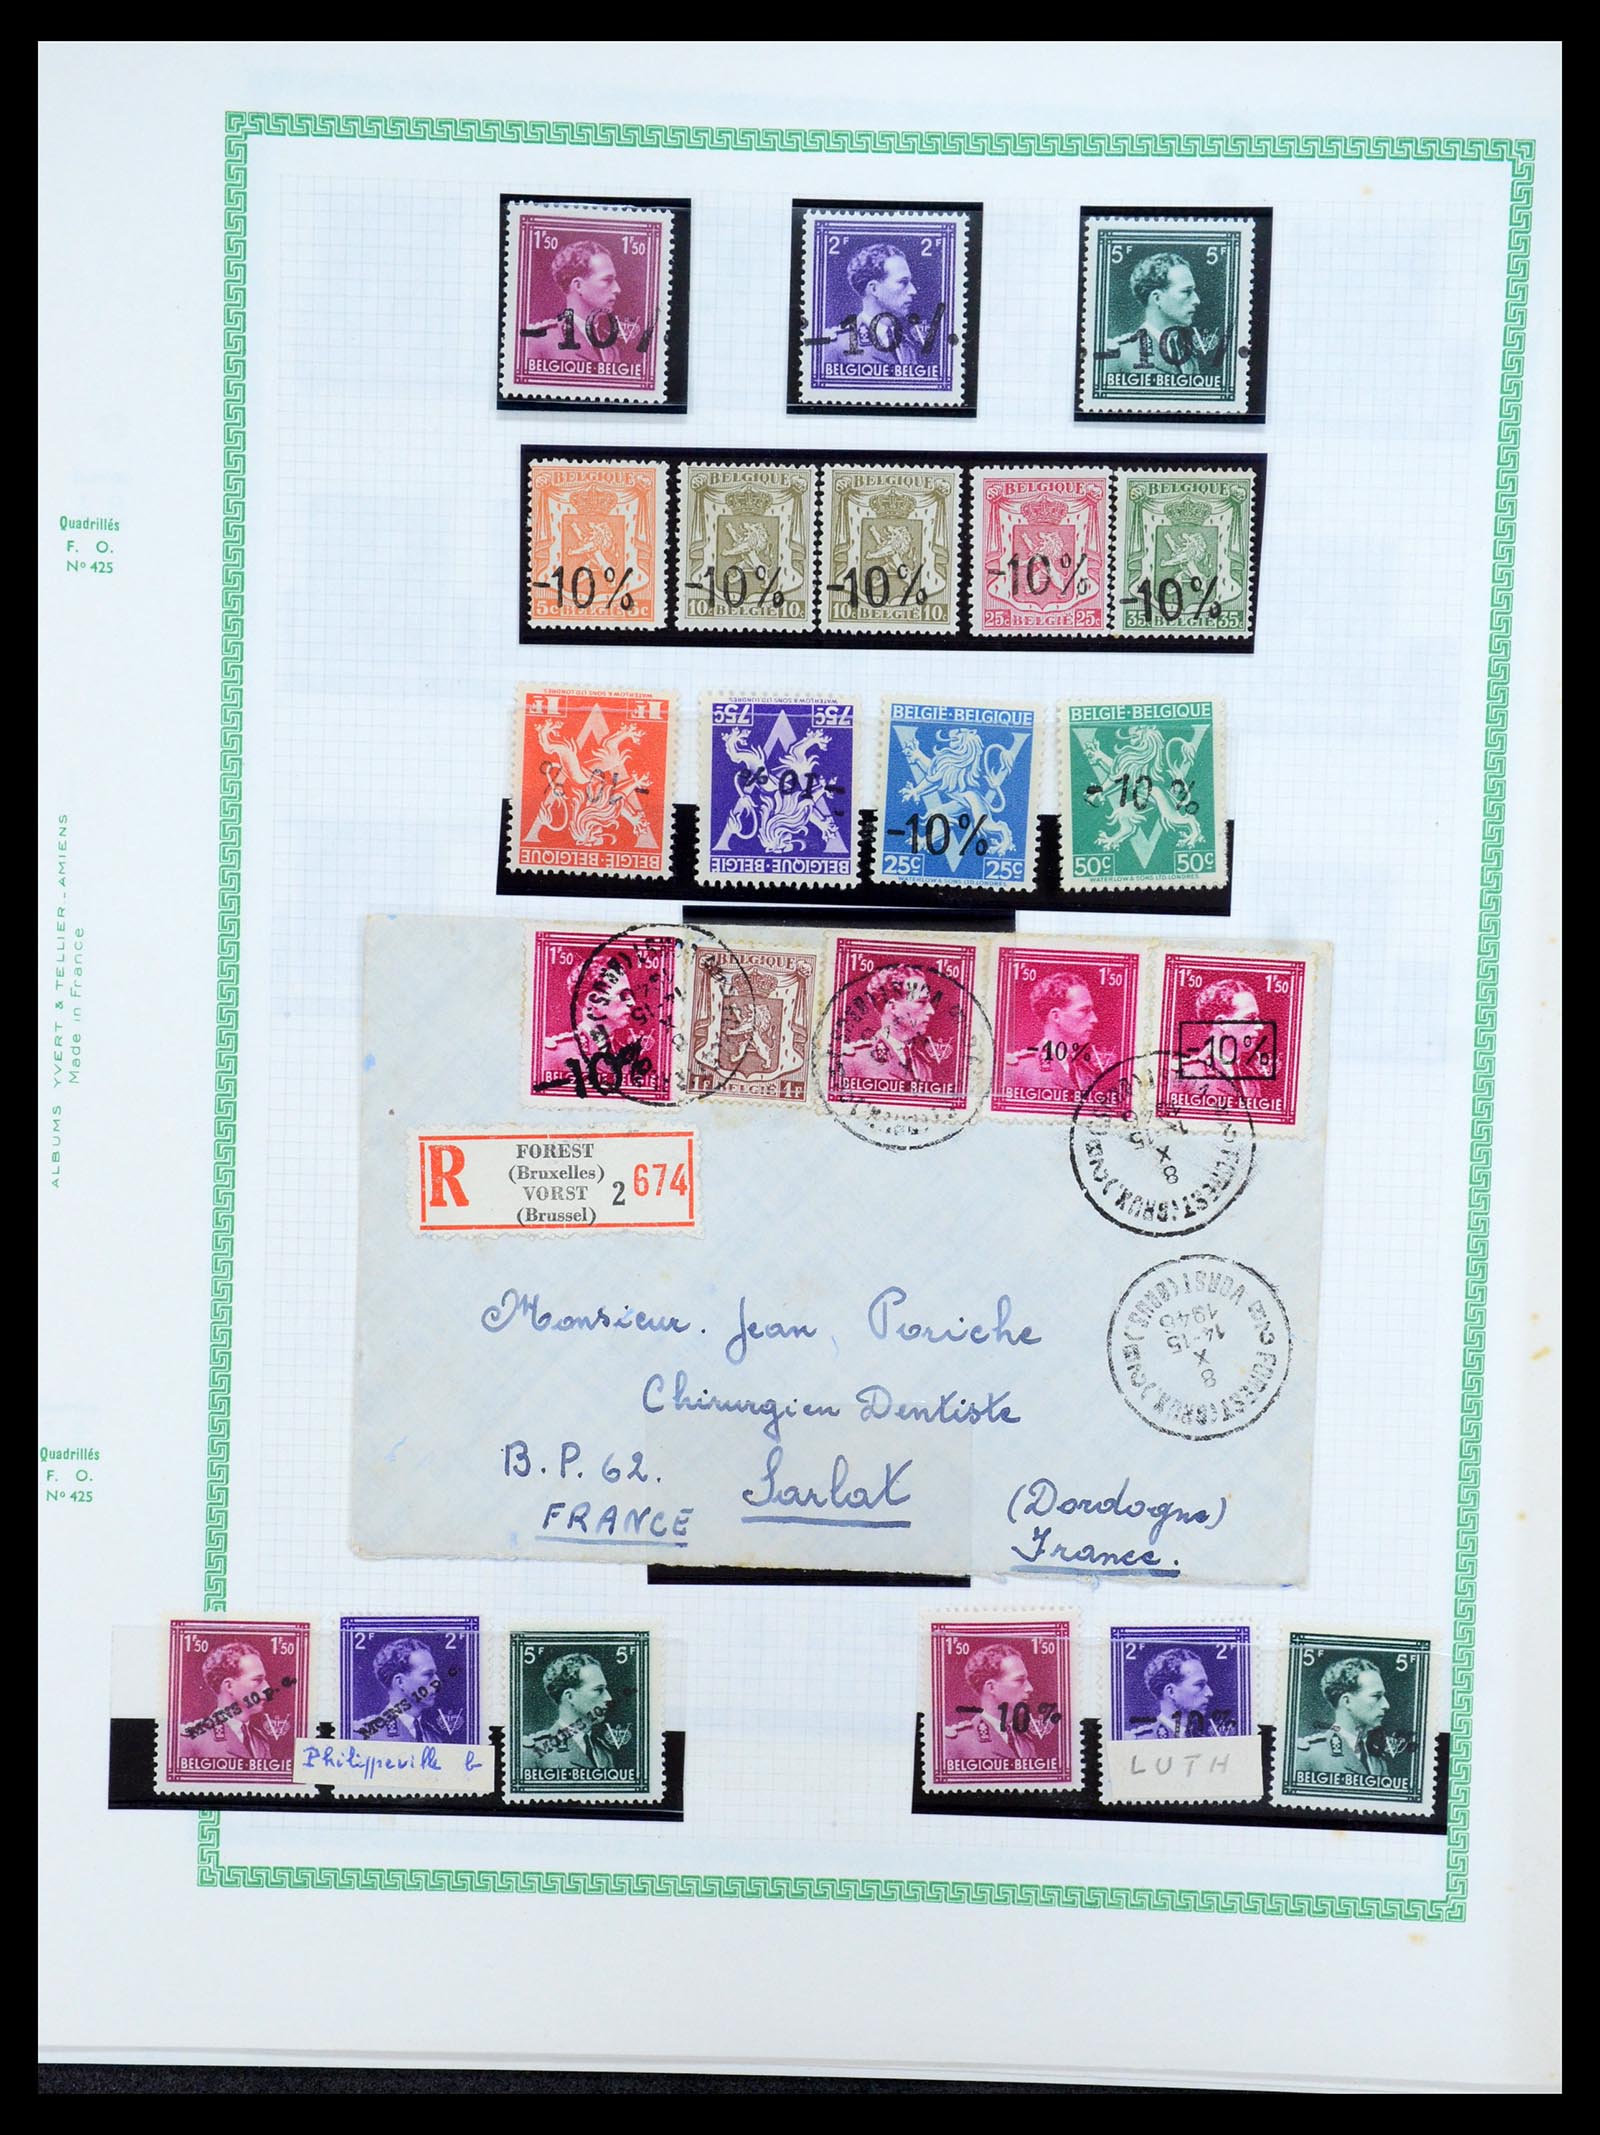 35733 189 - Stamp Collection 35733 Belgium 1946 -10% overprints.